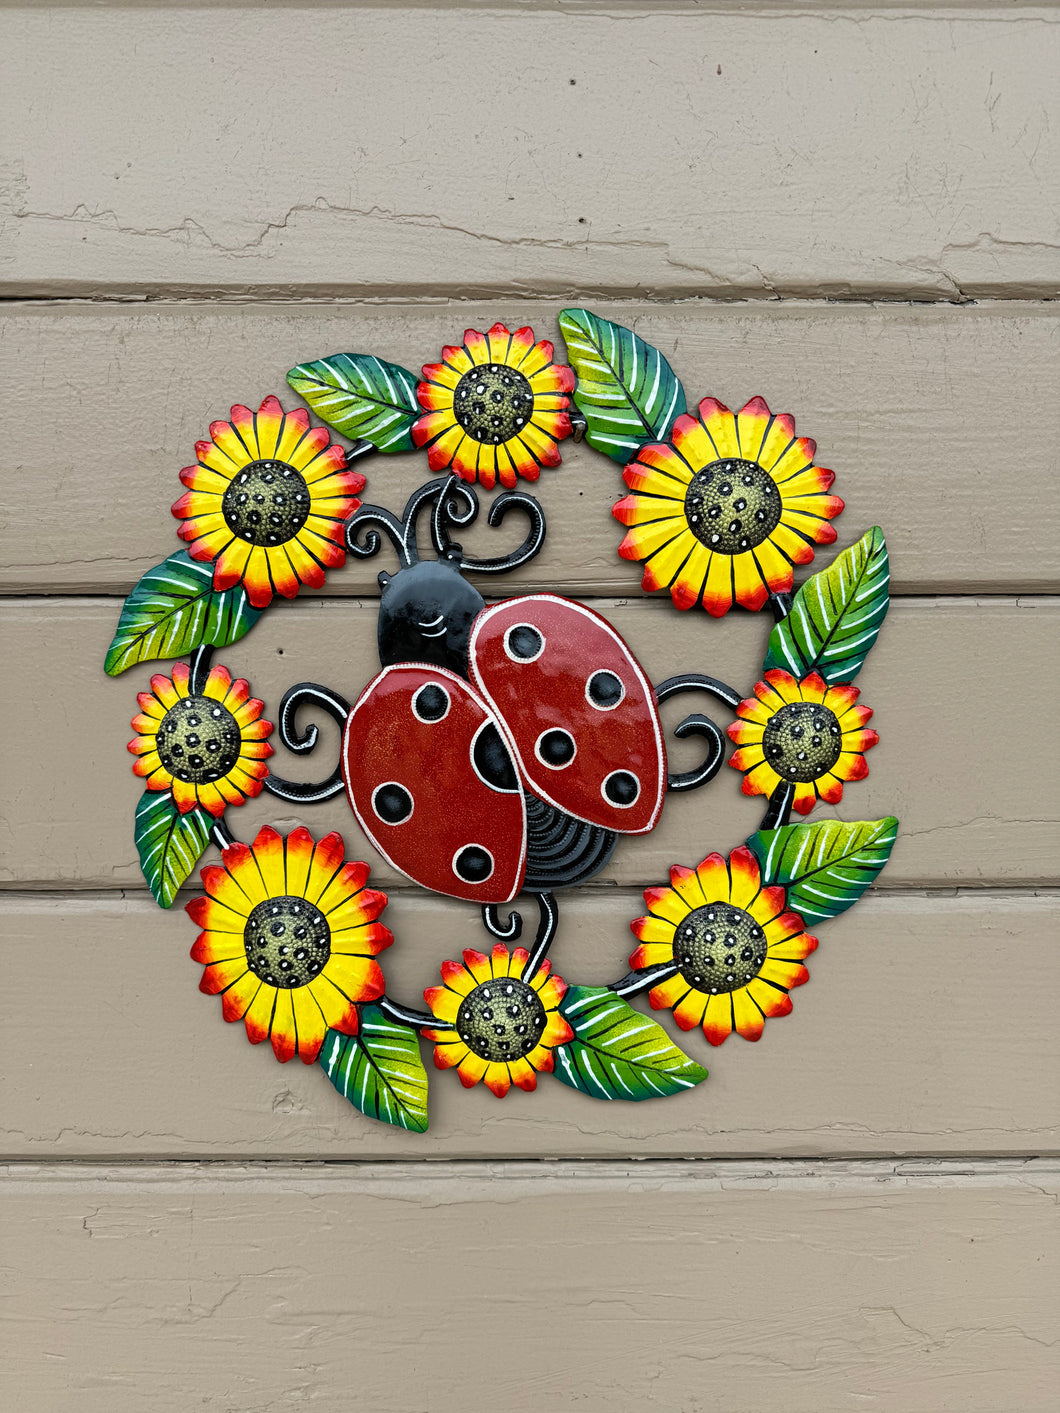 Ladybug and Sunflowers - Large 22”